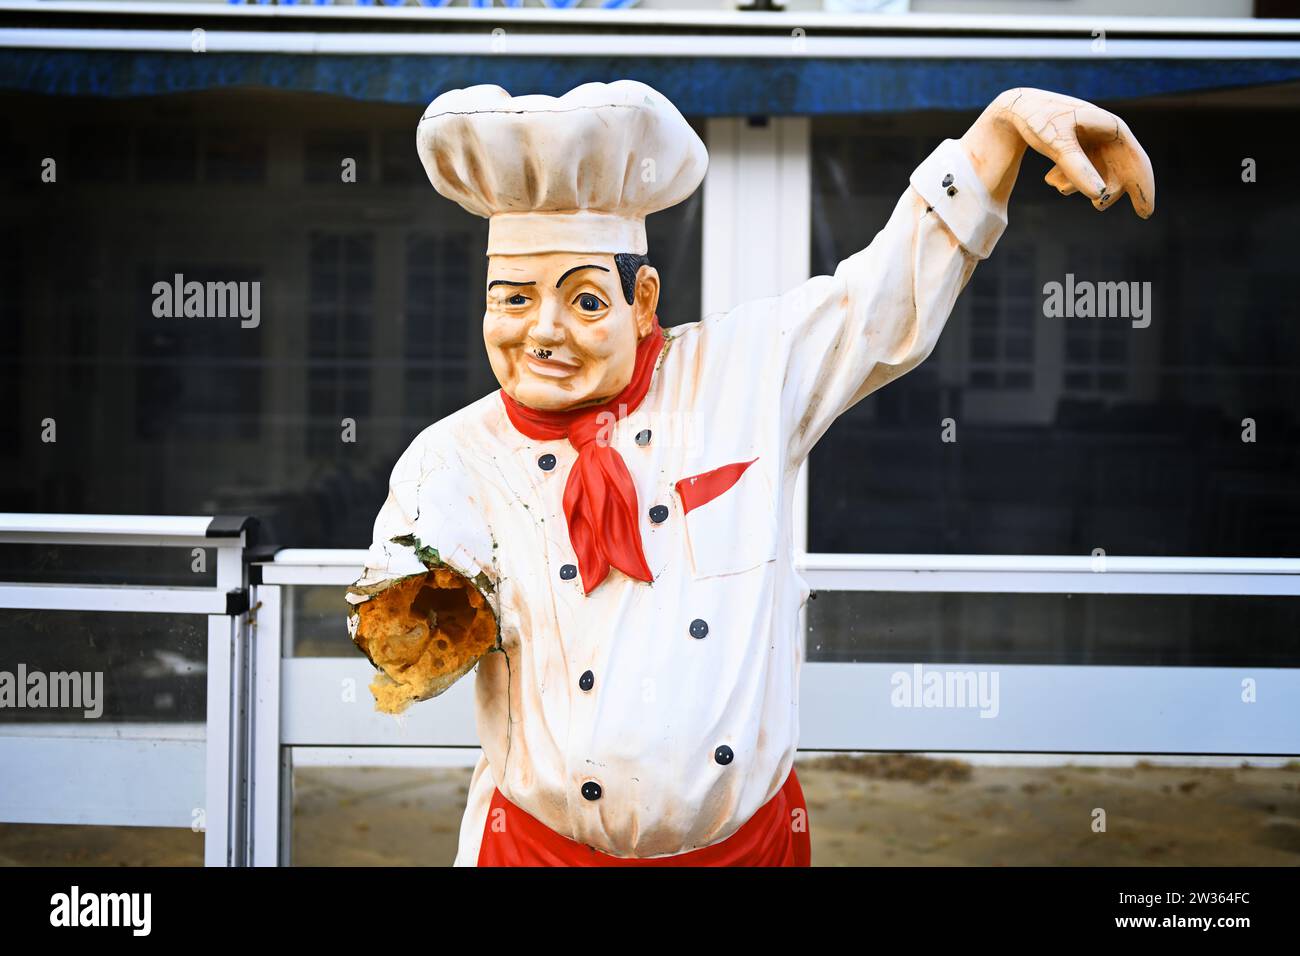 Derangierte Figur eines Kochs vor einem Restaurant, in der Gastronomie wird die Umsatzsteuer auf Speisen wieder auf 19% angehoben Stock Photo